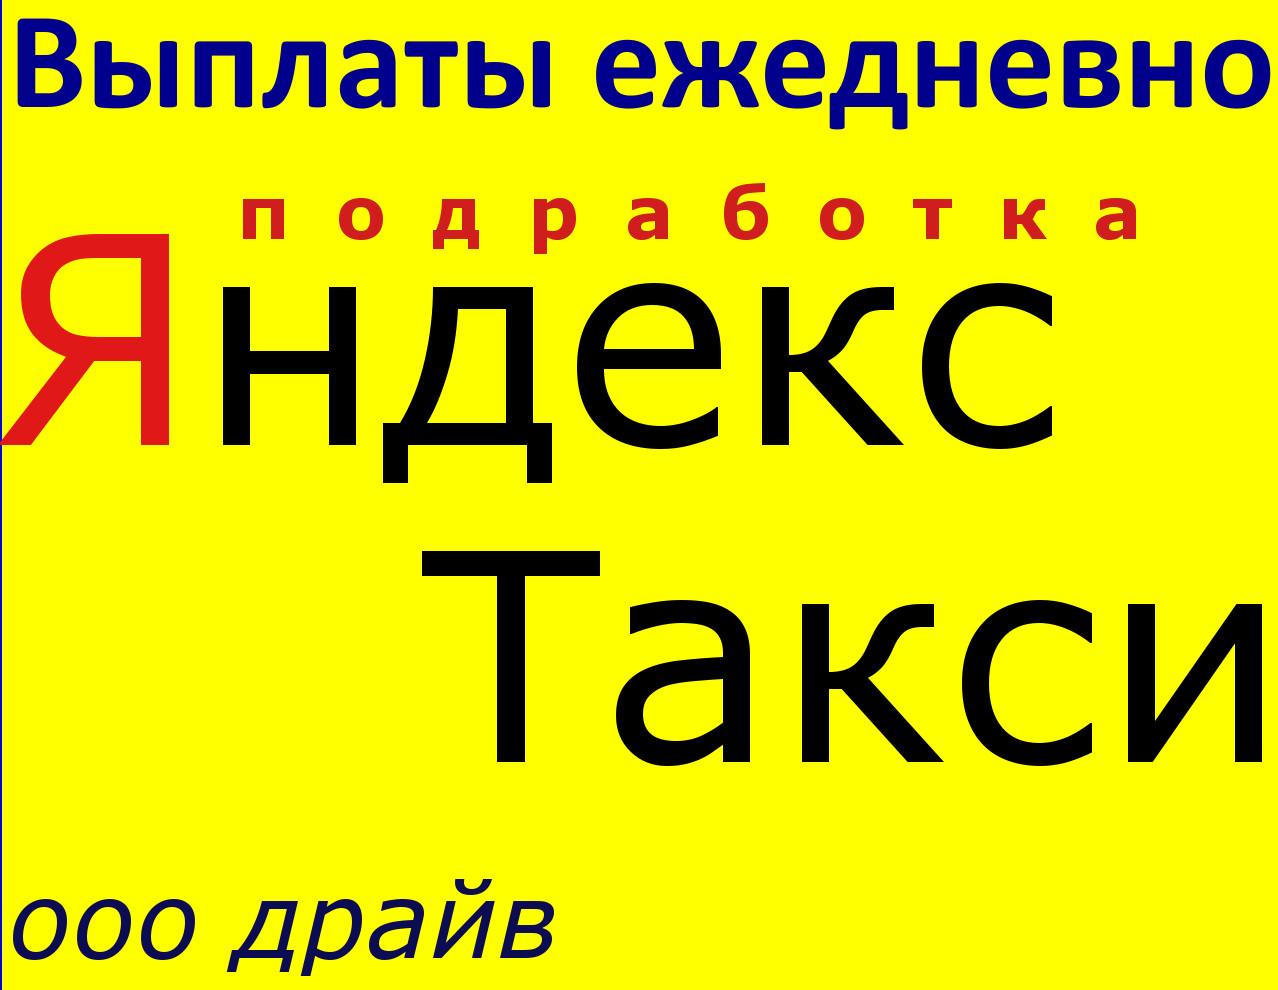 Работа Водитель в Яндекс Такси с авто Подработка. Башкортостан